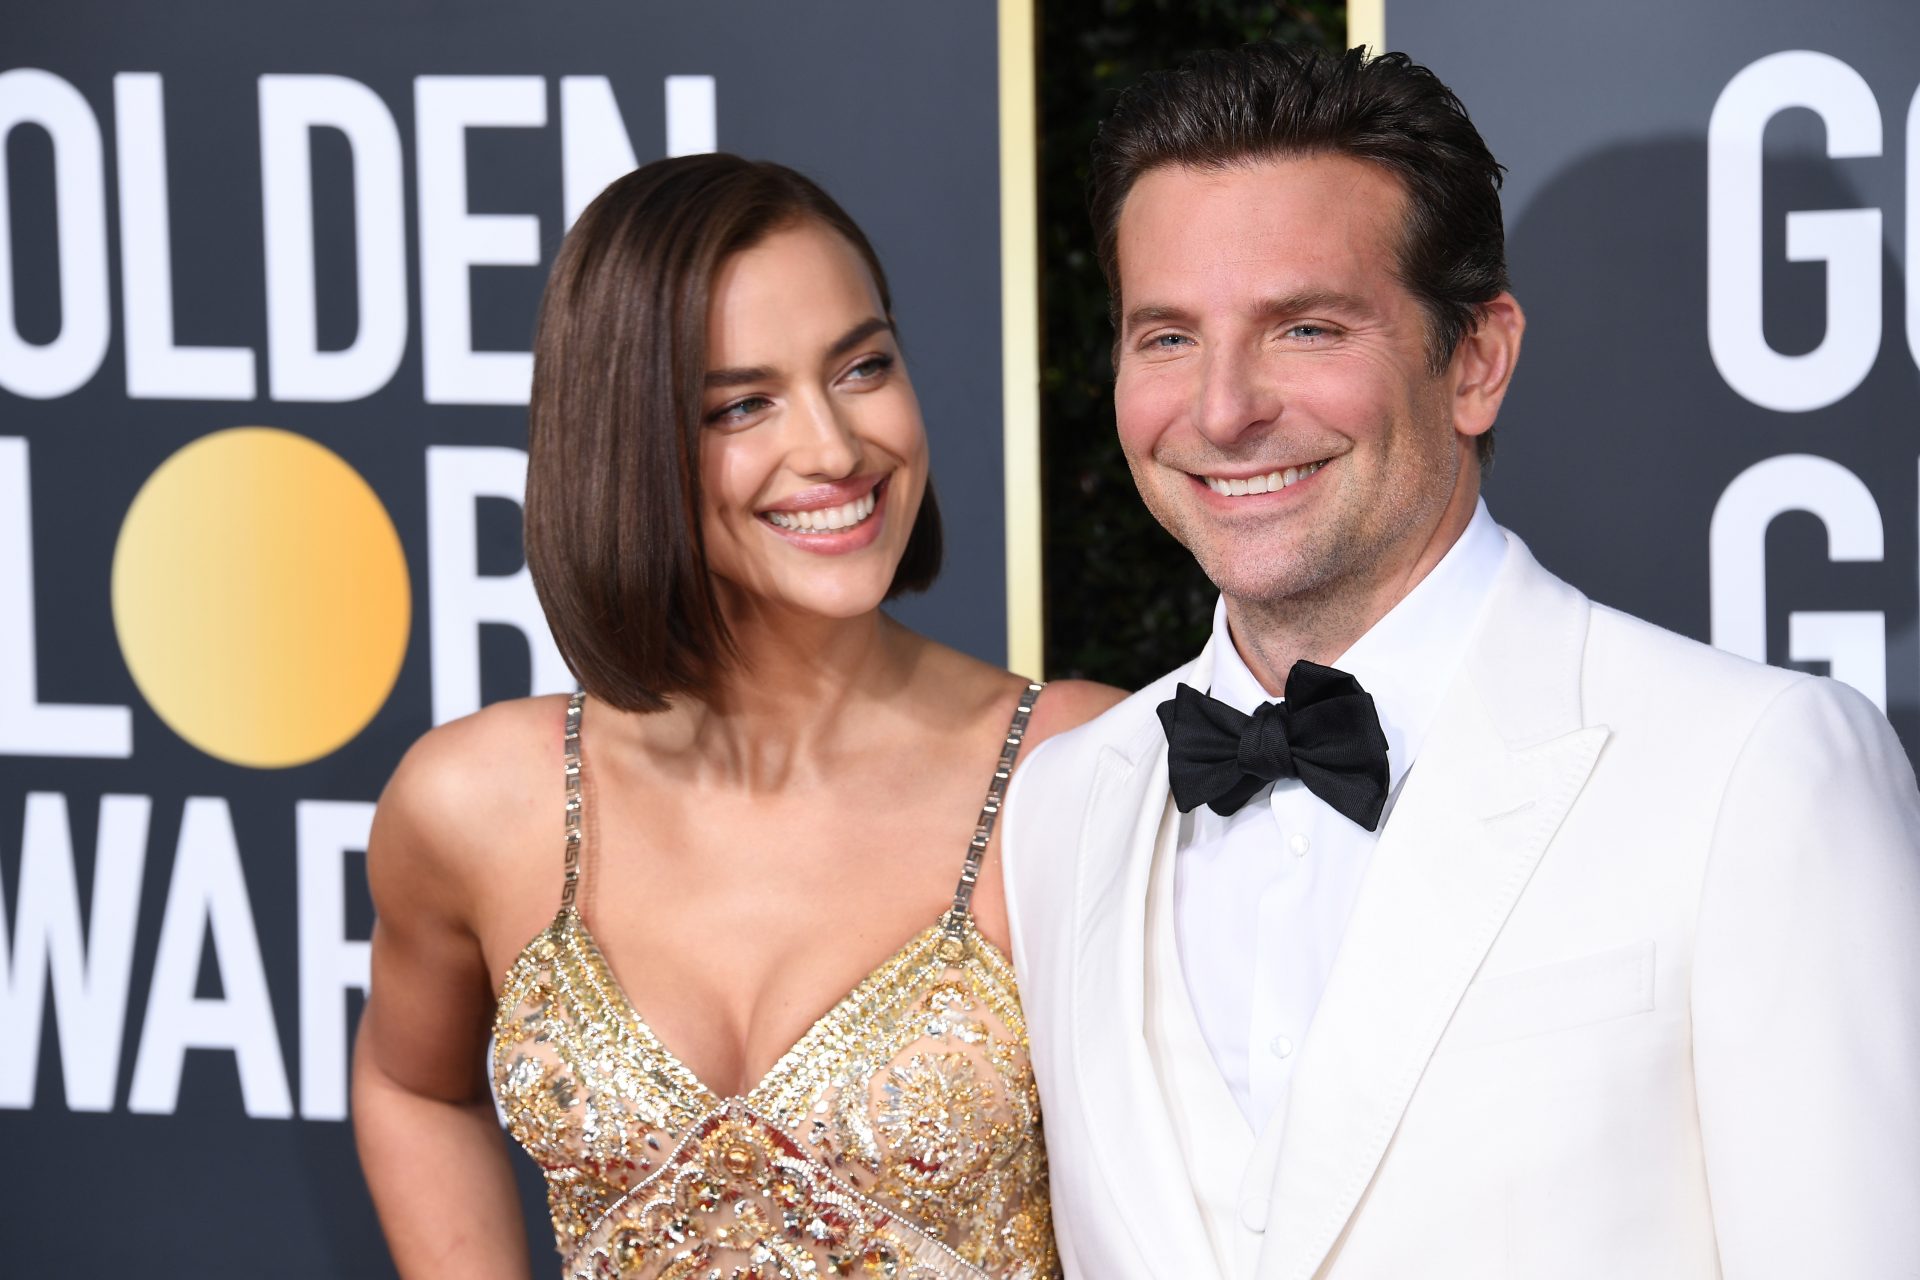 Irina was said to get closer to her ex, Bradley Cooper